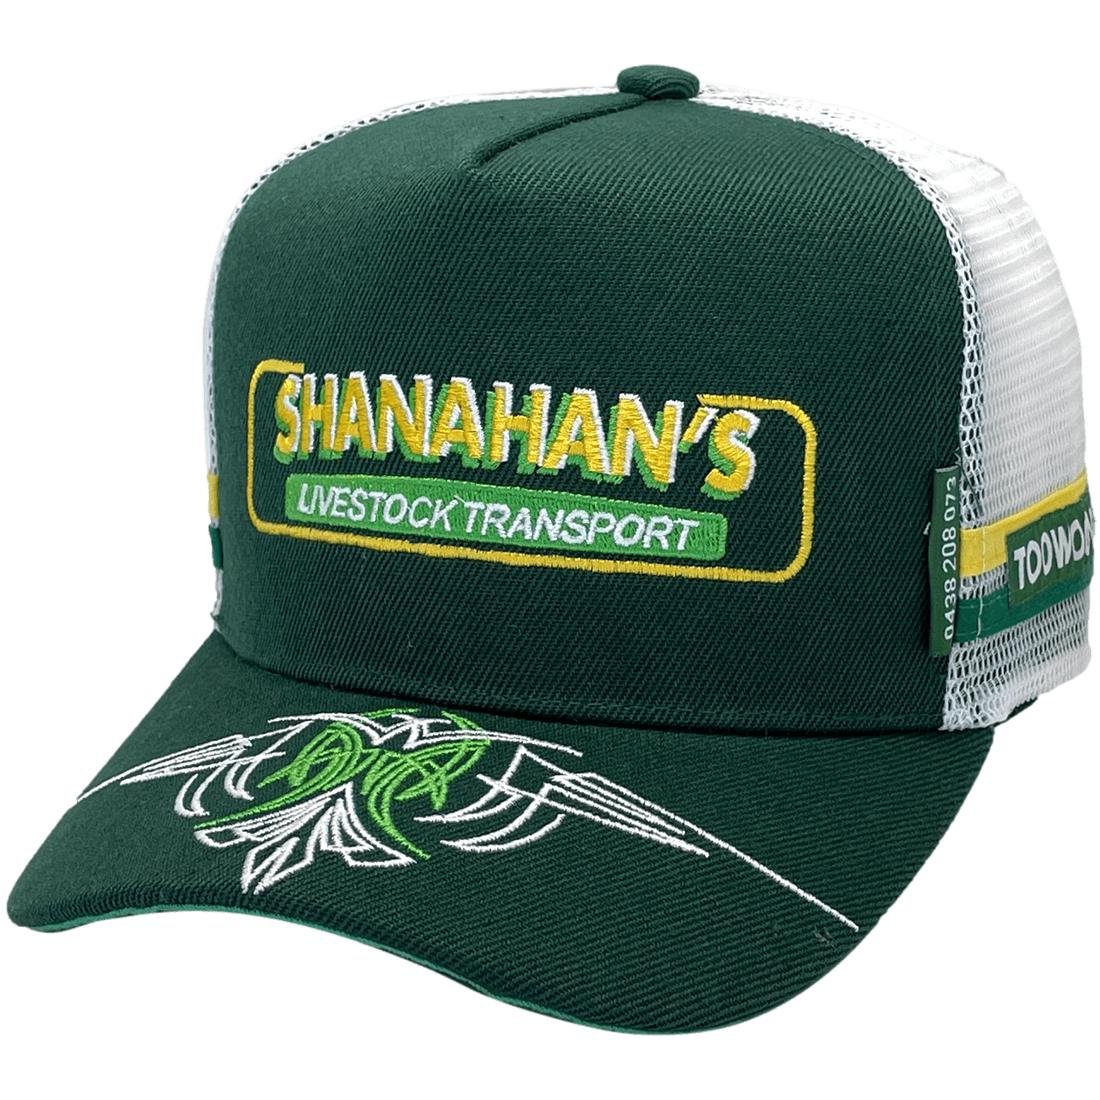 Shanahans Livestock Transport Green Custom Power Trucker Hat